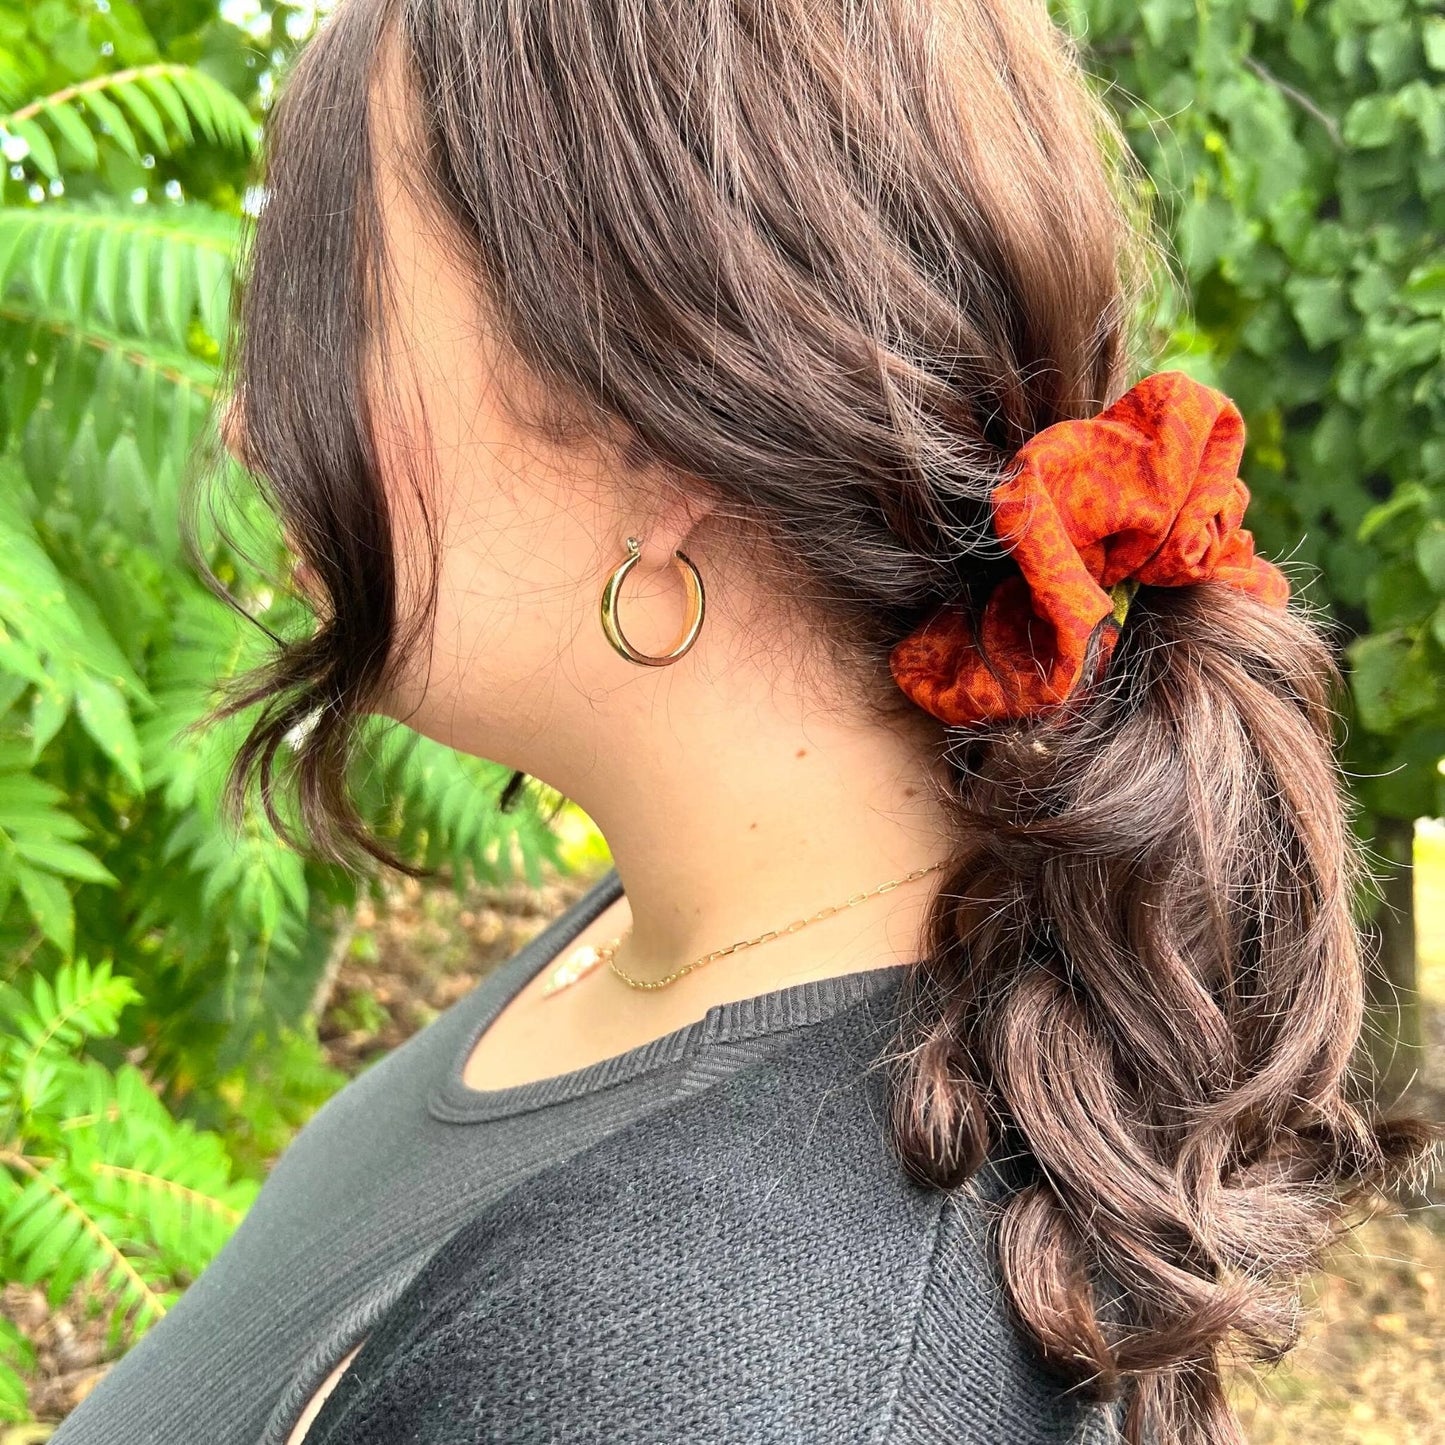 Model has their hair tie up in a ponytail wearing an orange sari silk scrunchie.